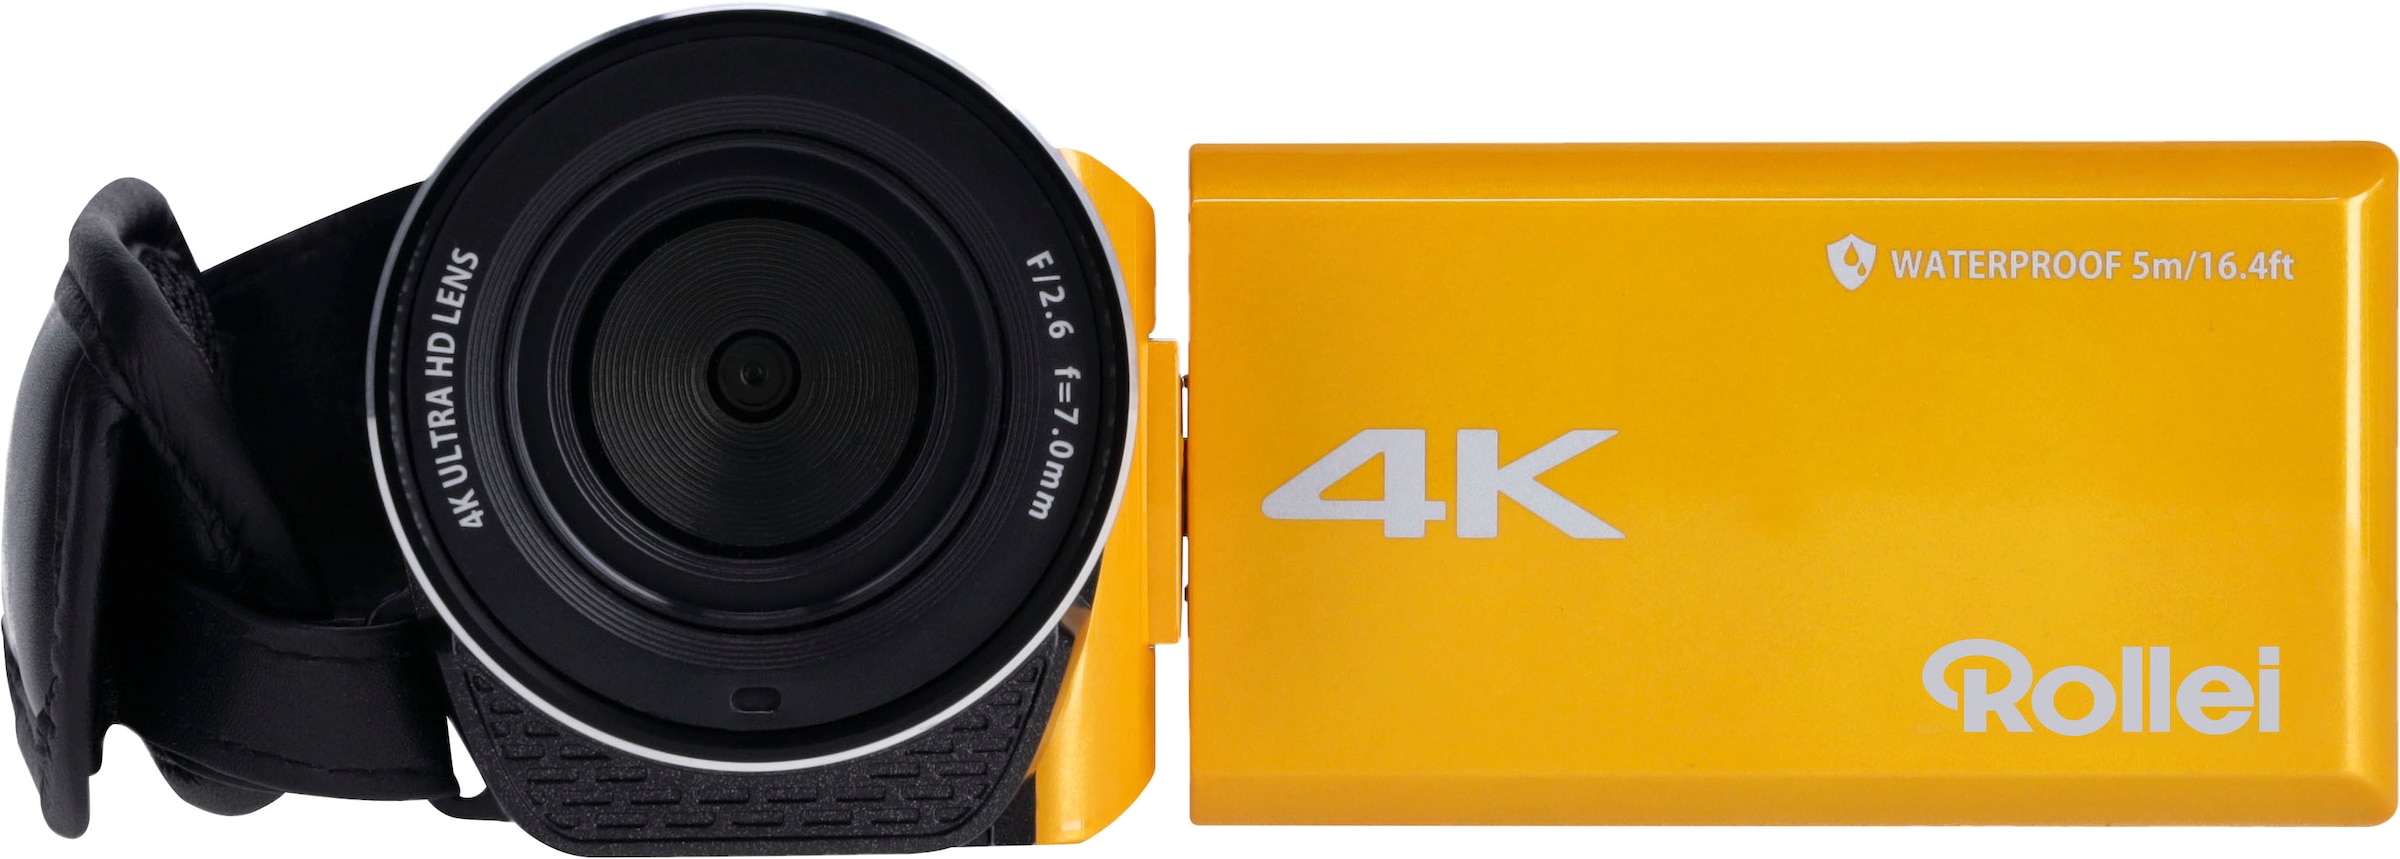 Rollei Unterwasser-Camcorder »Movieline UHD 5m Waterproof«, 4K Ultra HD